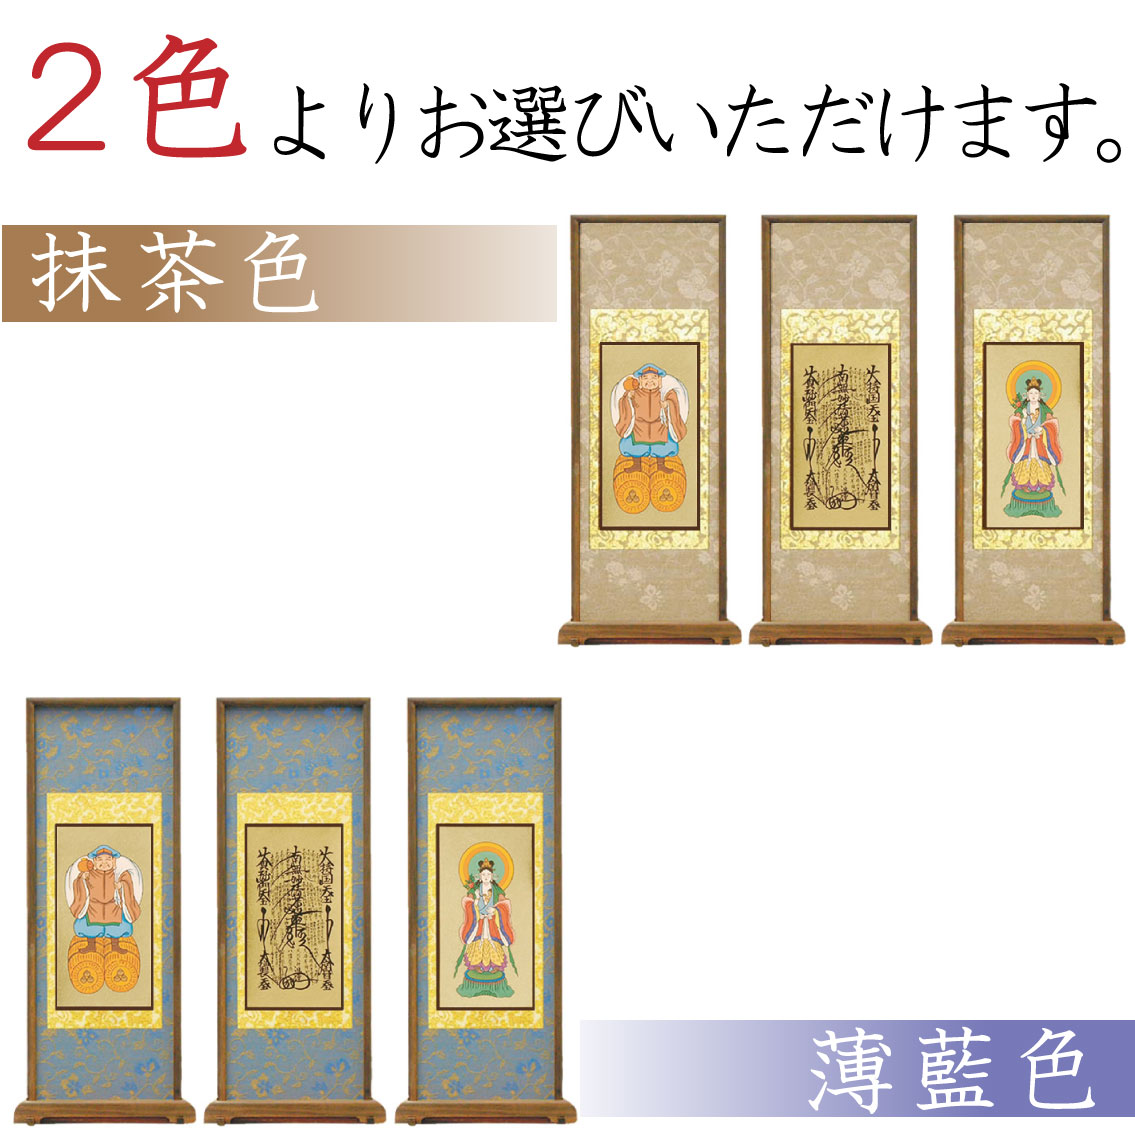 【高級素材」日蓮宗のスタンド式掛け軸は、2色からお選び頂けます。